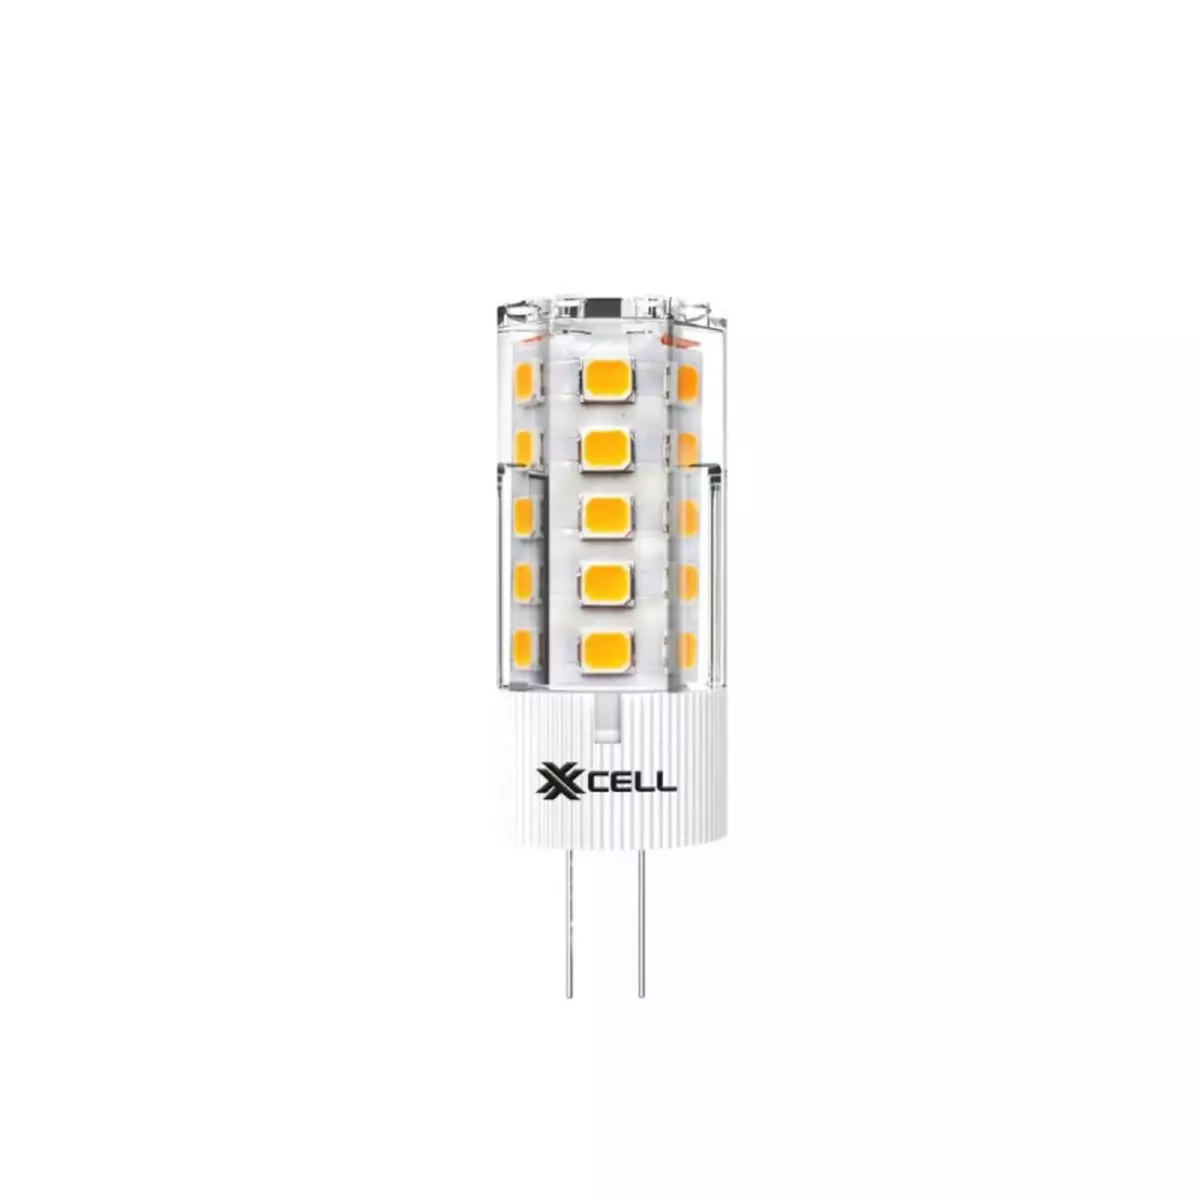  Ampoule LED XXCELL BI PIN - G4 12V 2.5W équivalent 25W